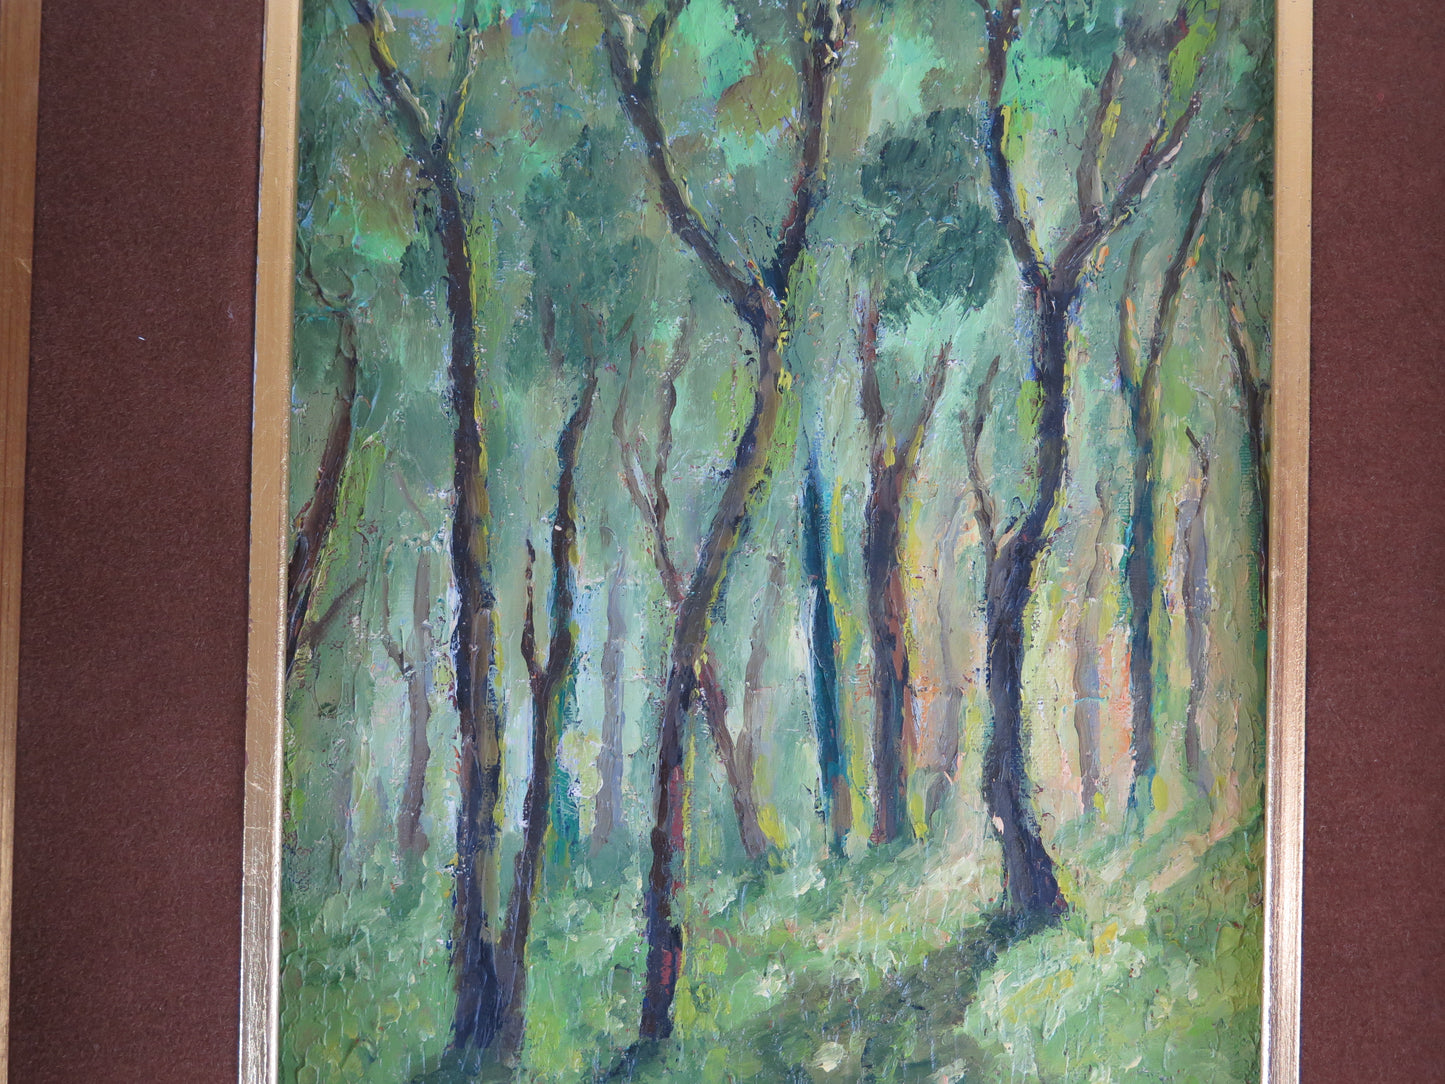 Quadro ad olio firmato Poggio opera del pittore piemontese Giacomo Poggio anni '60 paesaggio boschivo verde intenso X1